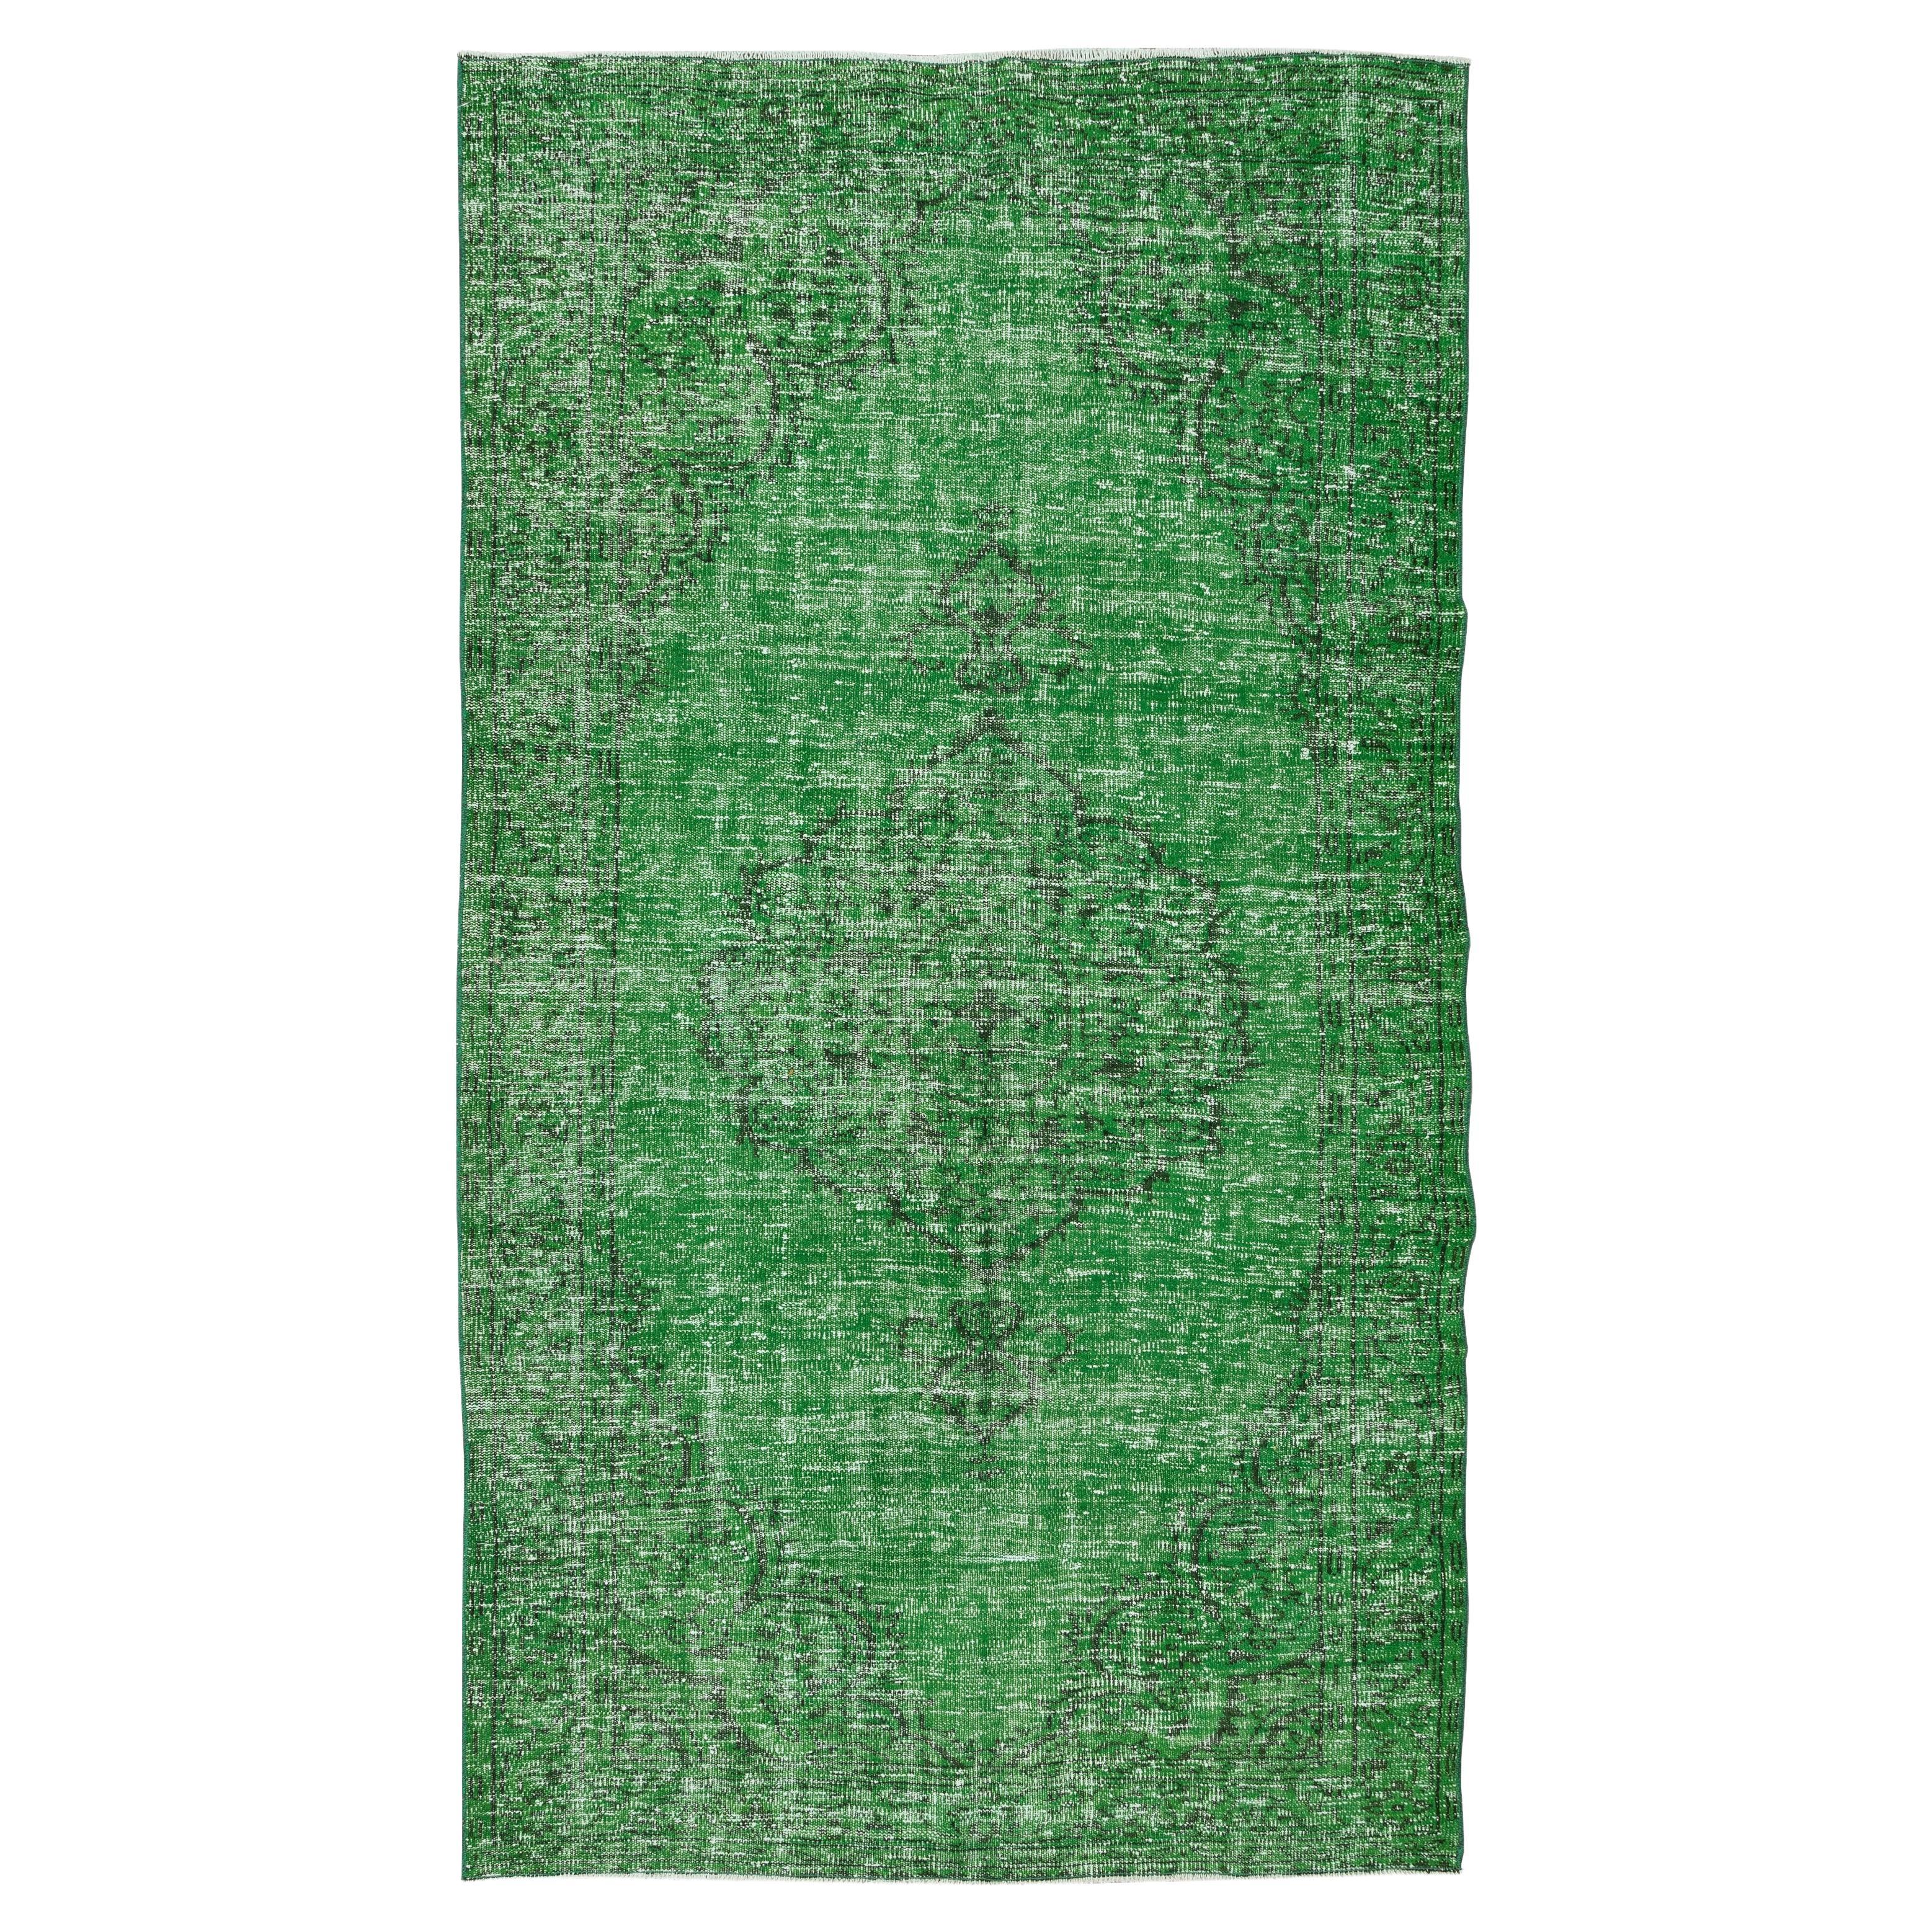 stanischer 5.2x9.3 Ft Vintage Anatolischer Teppich, grüner handgefertigter zeitgenössischer Wollteppich